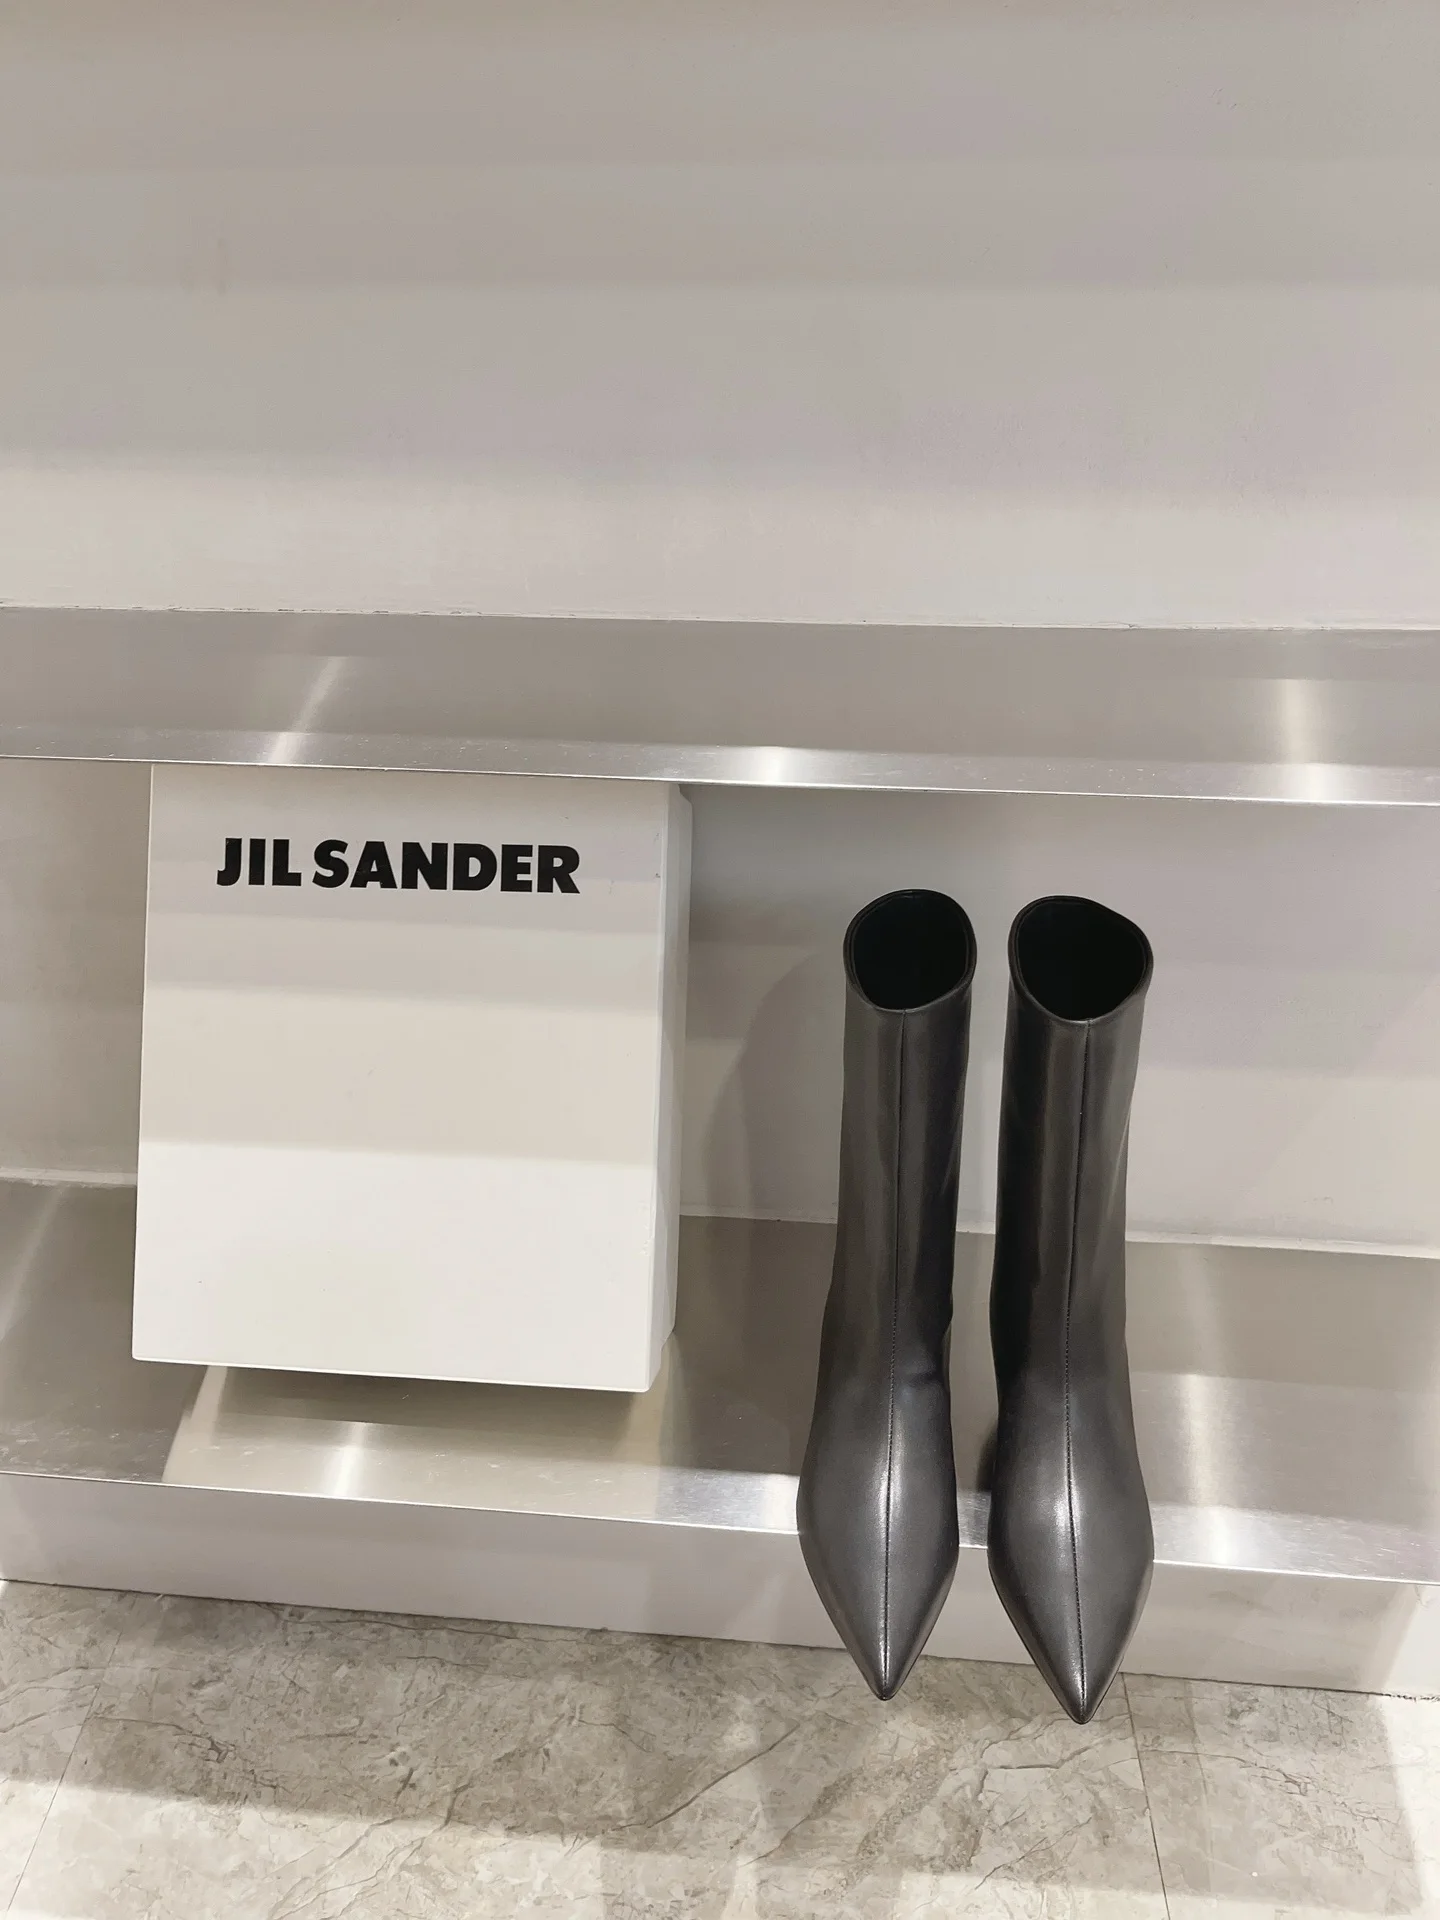 

Копия женской обуви международного бренда, модель JIL SANDER, искусственная, заостренный носок, низкий каблук 3 см, сапоги до середины икры